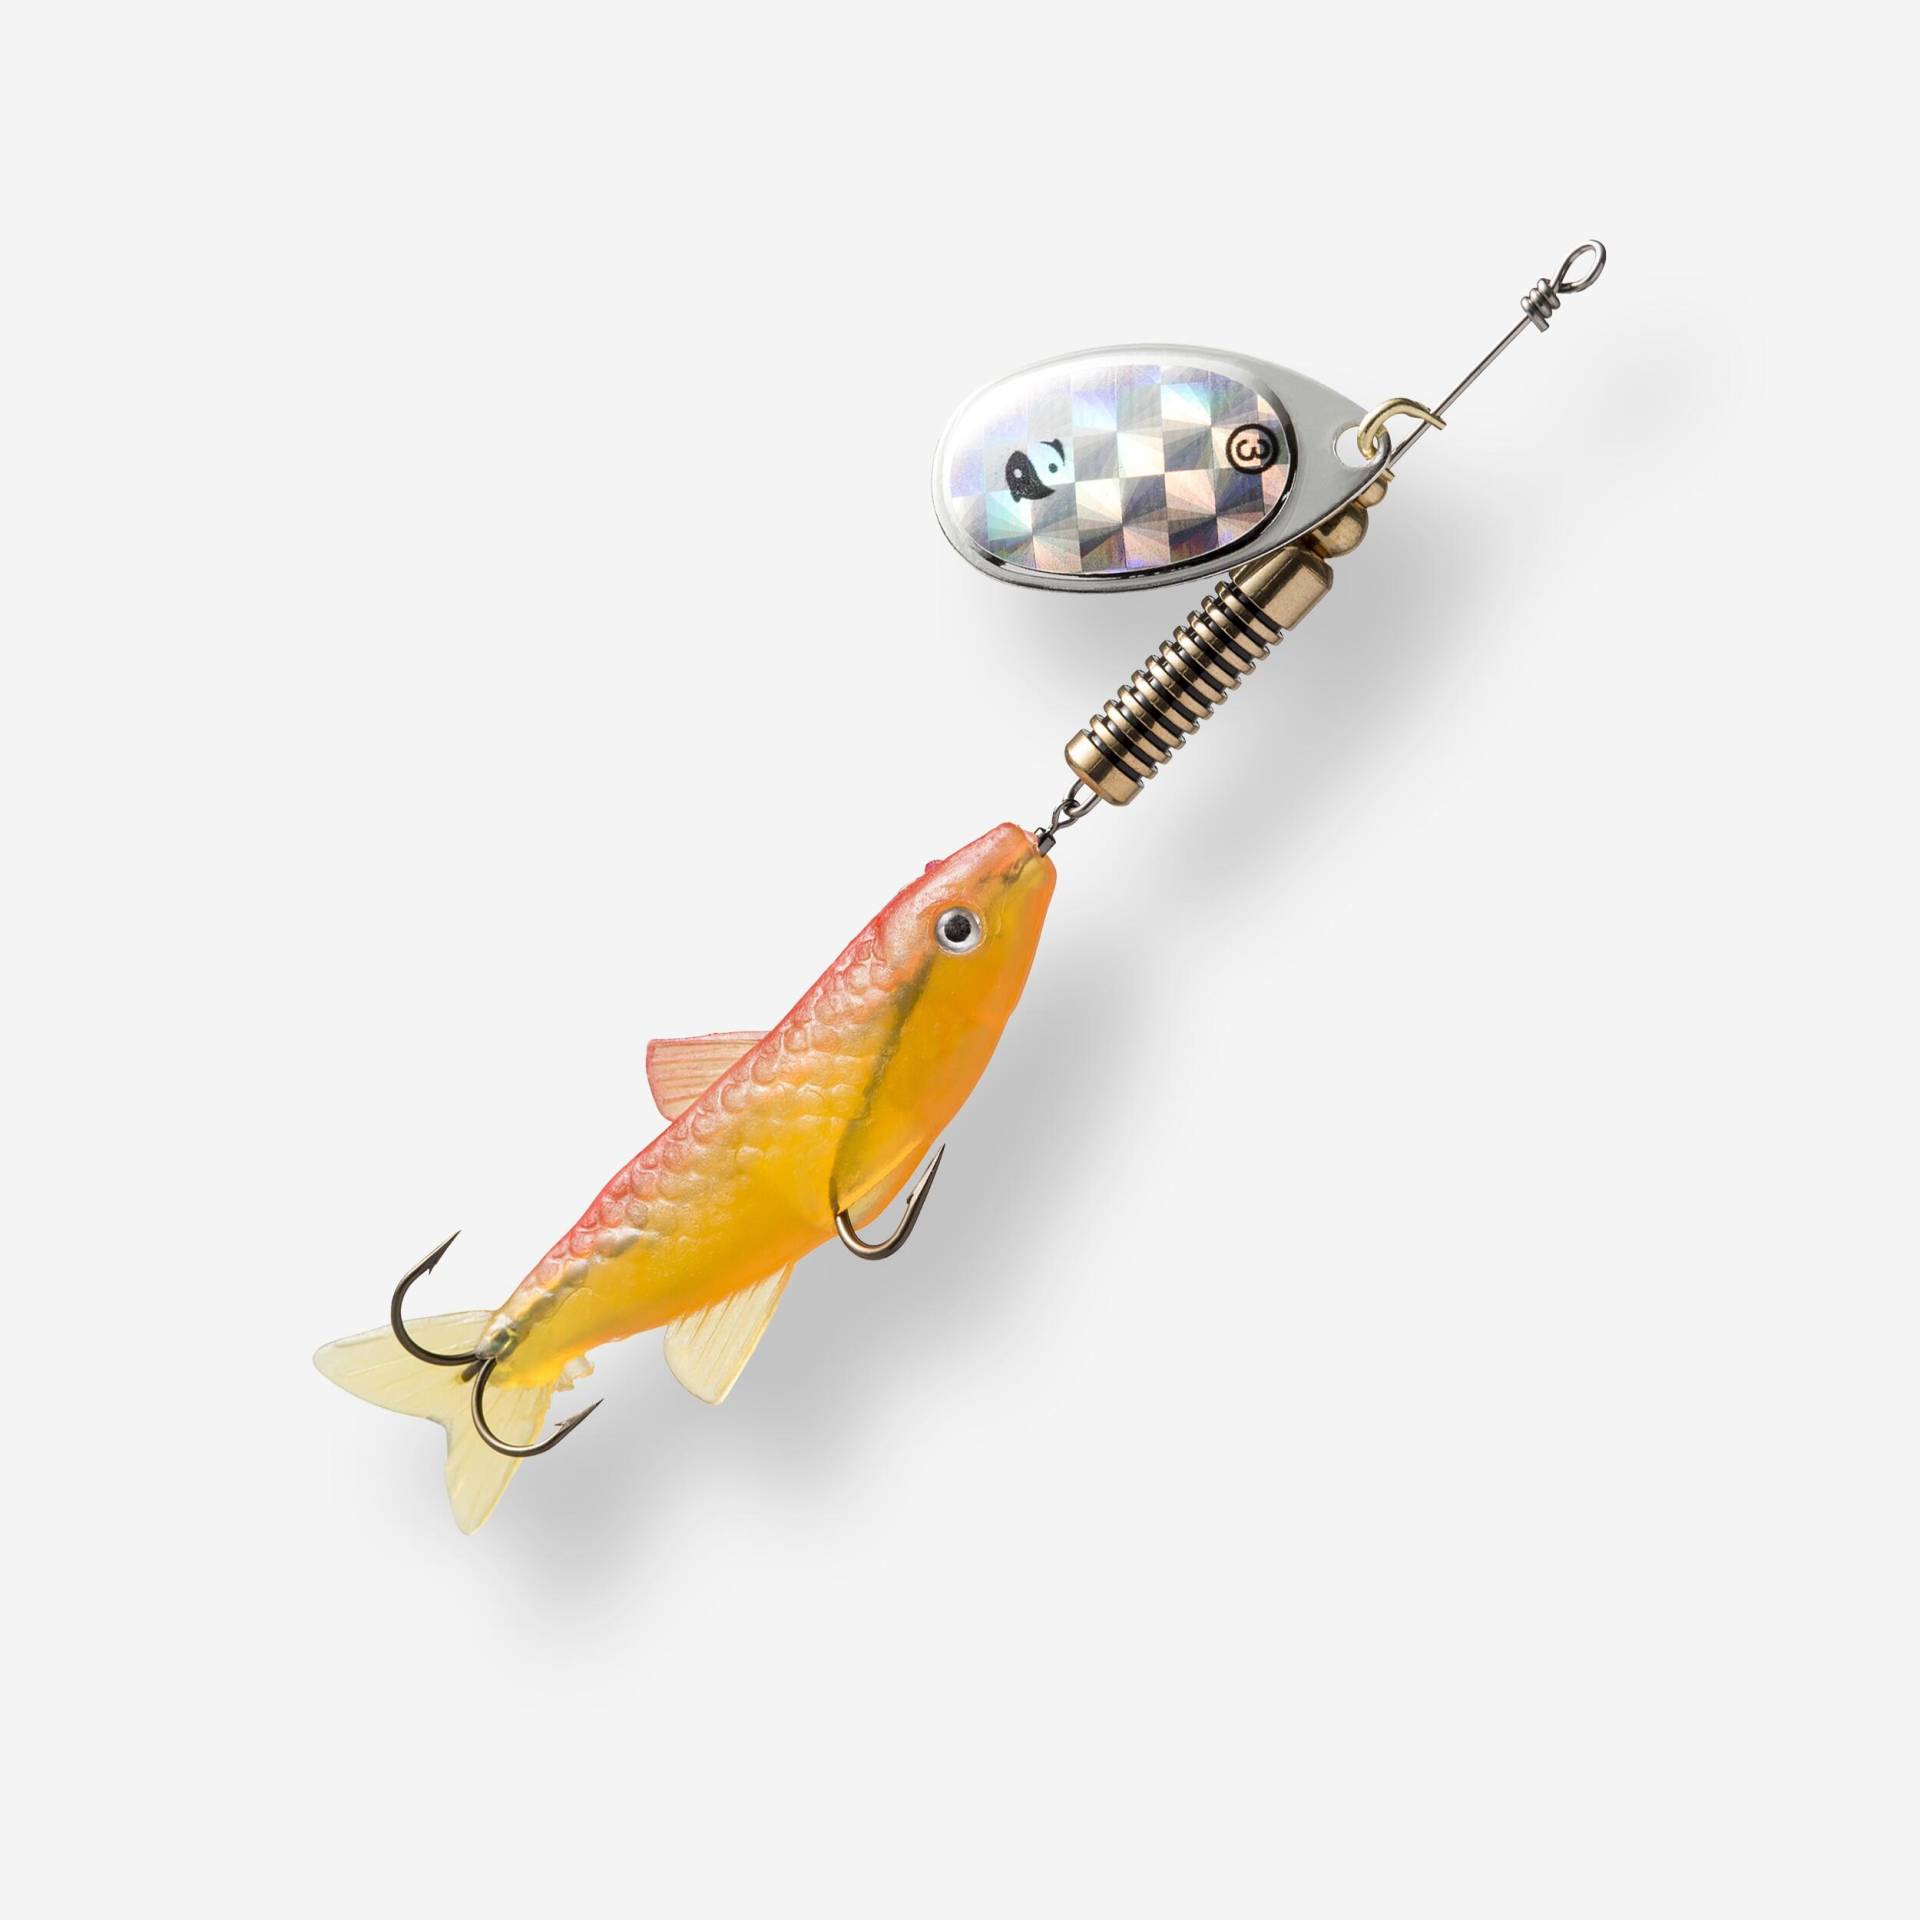 Spinner mit Elritze Weta Fish #3 fluoreszierend Raubfischangeln von CAPERLAN